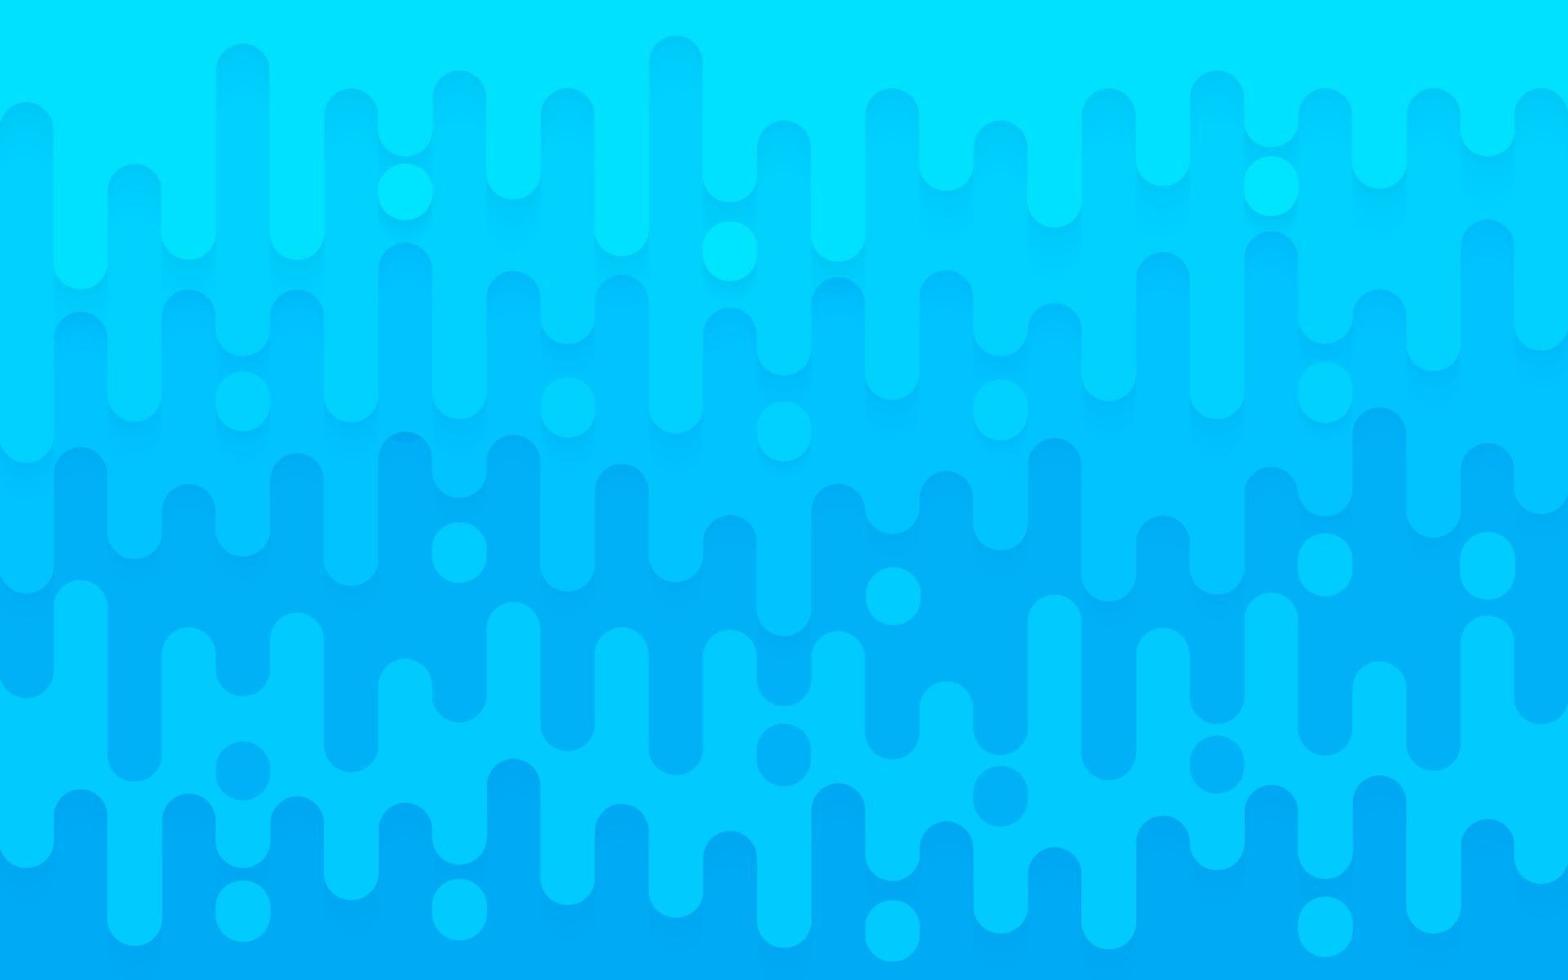 abstrato luz azul linhas arredondadas fundo da camada de transição de meio-tom com espaço de cópia. design plano simples do teste padrão da cor do céu azul. ilustração vetorial vetor